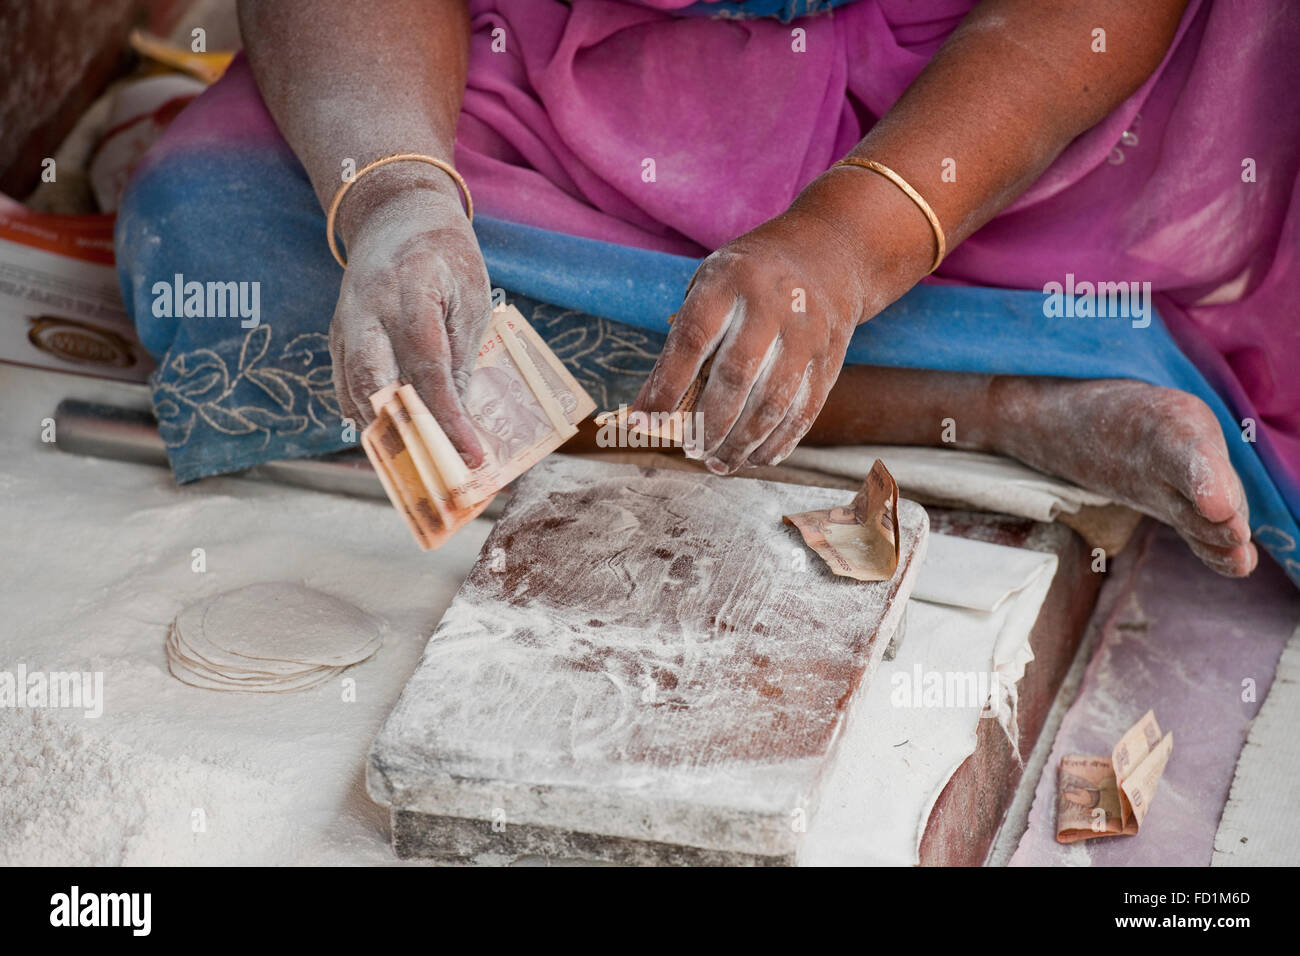 Ein Bild von einem Chappati Entscheidungsträger Hände und Arme in Mehl bedeckt und indische Rupien über einen hölzernen Hackstock zählen Stockfoto